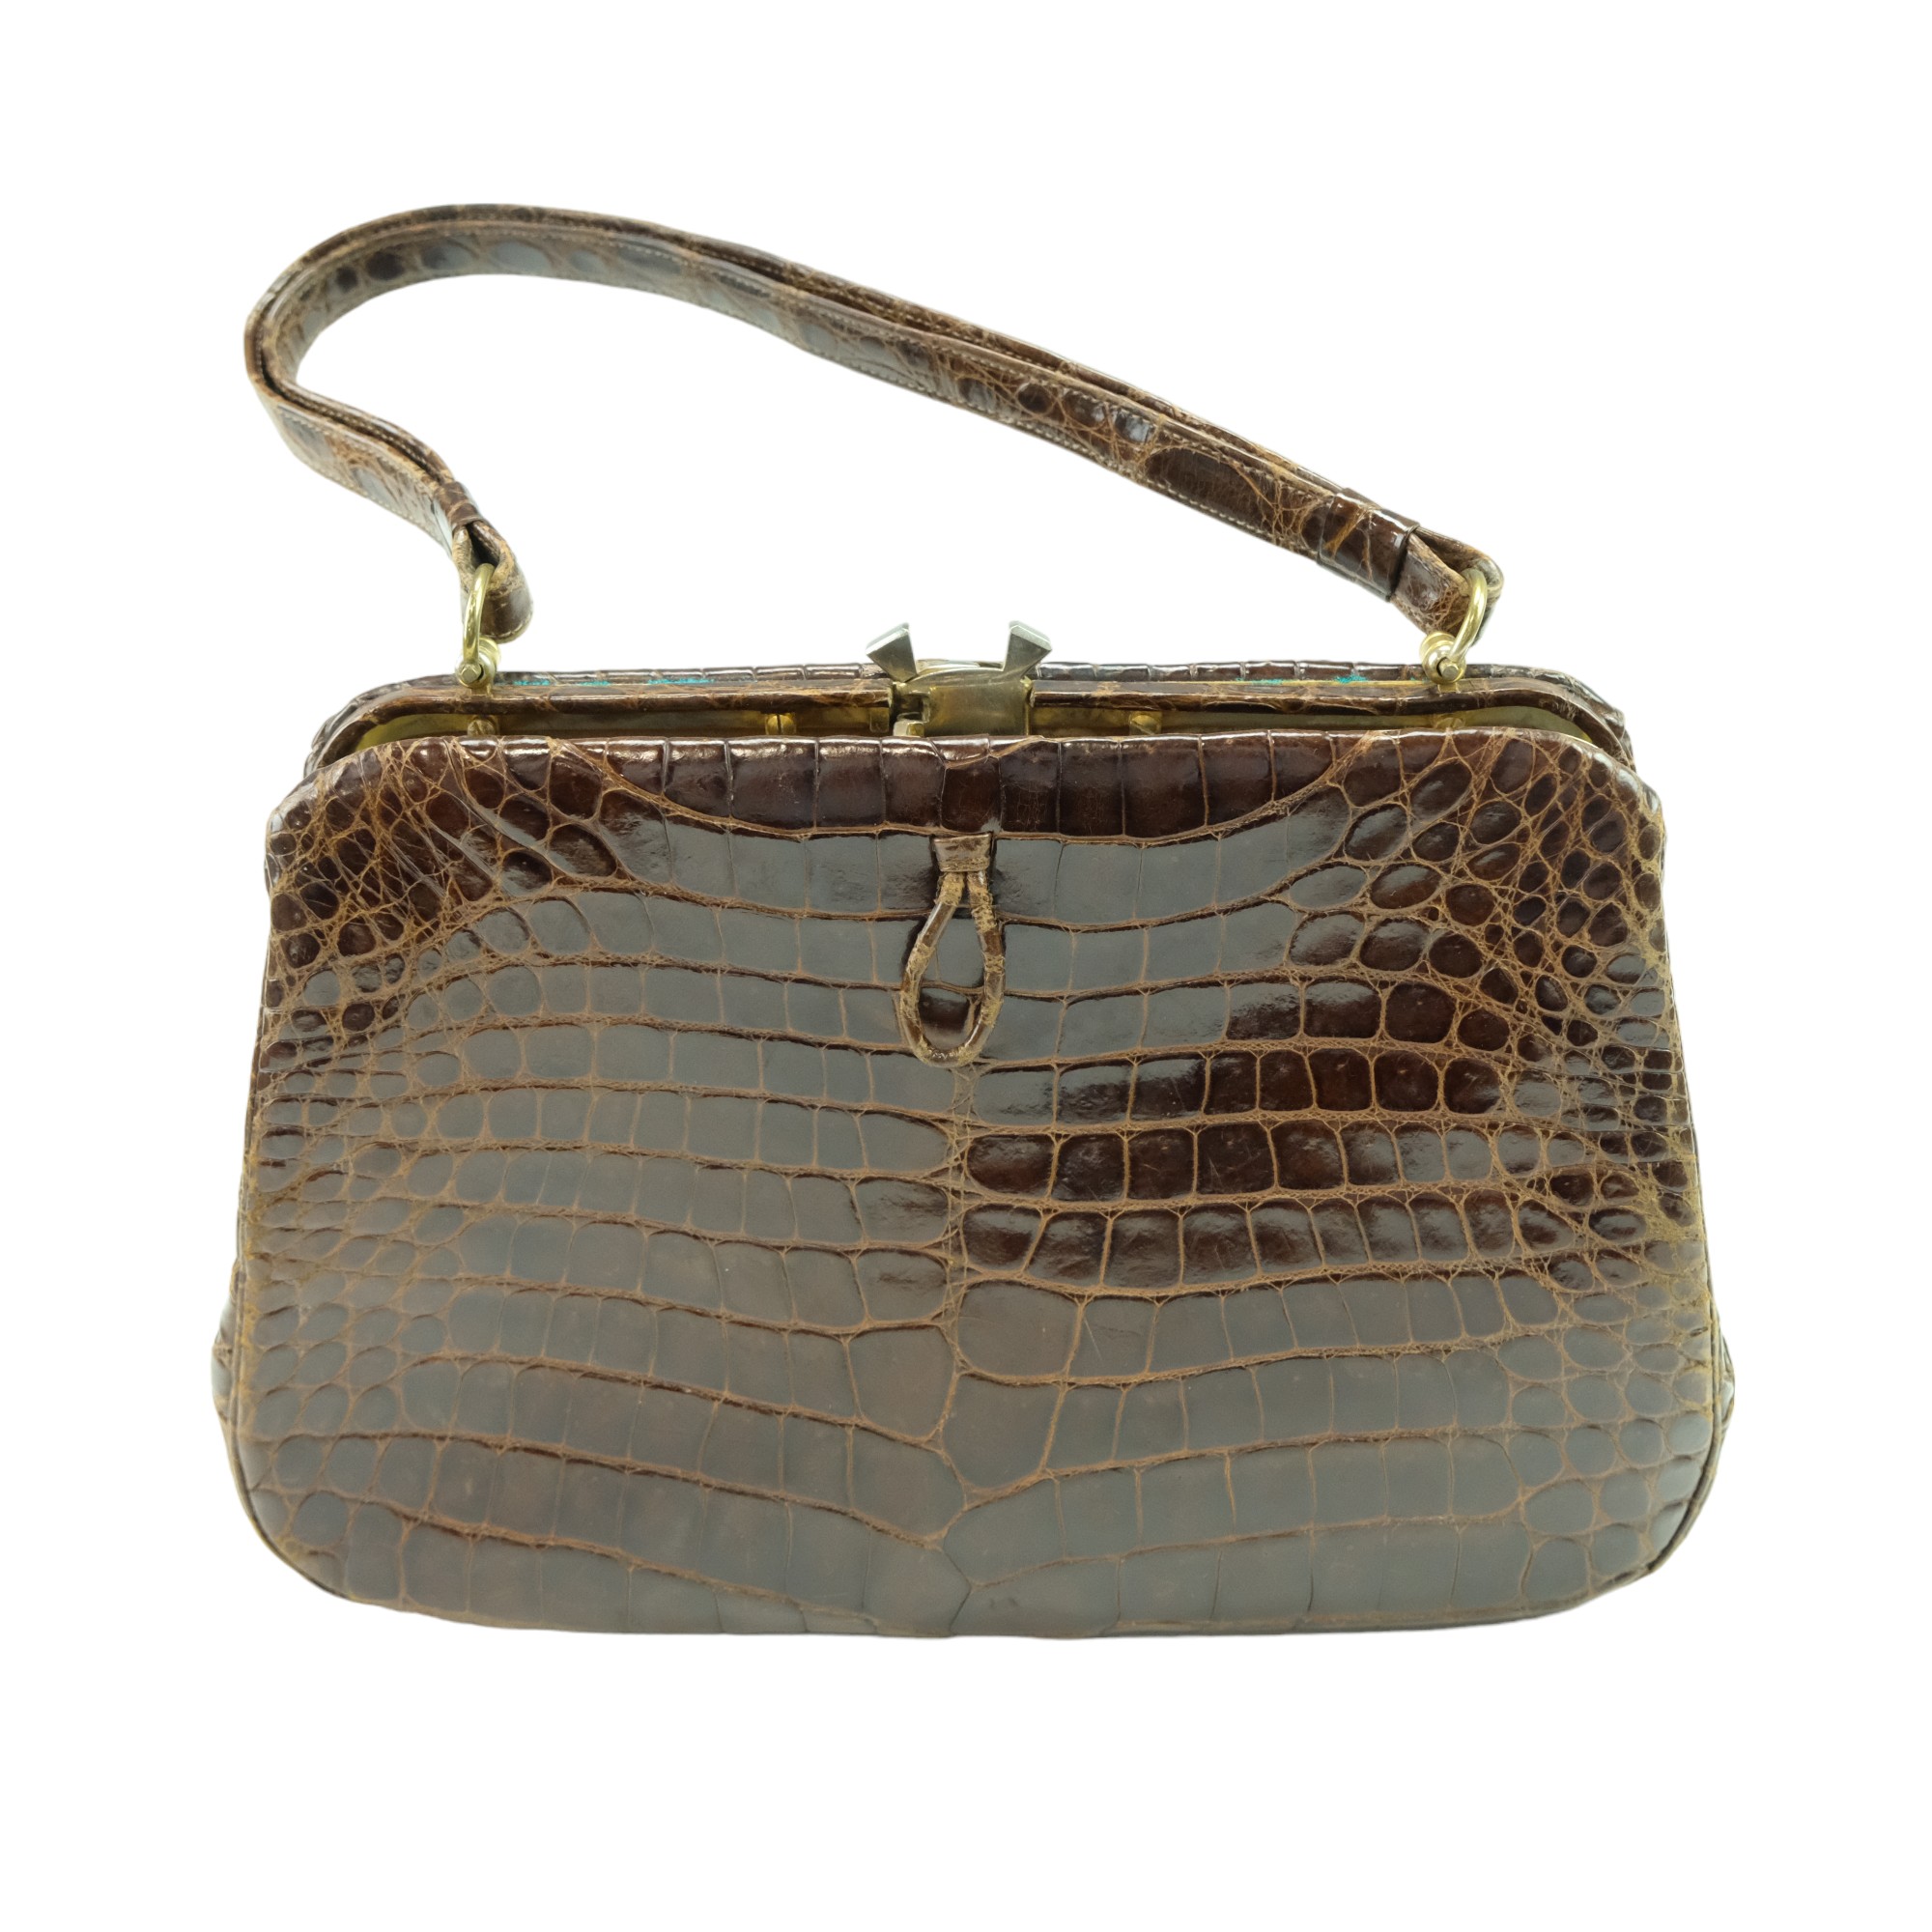 A vintage Harrods alligator handbag, circa 1960s-1970s, 27 x 18 cm excluding handle